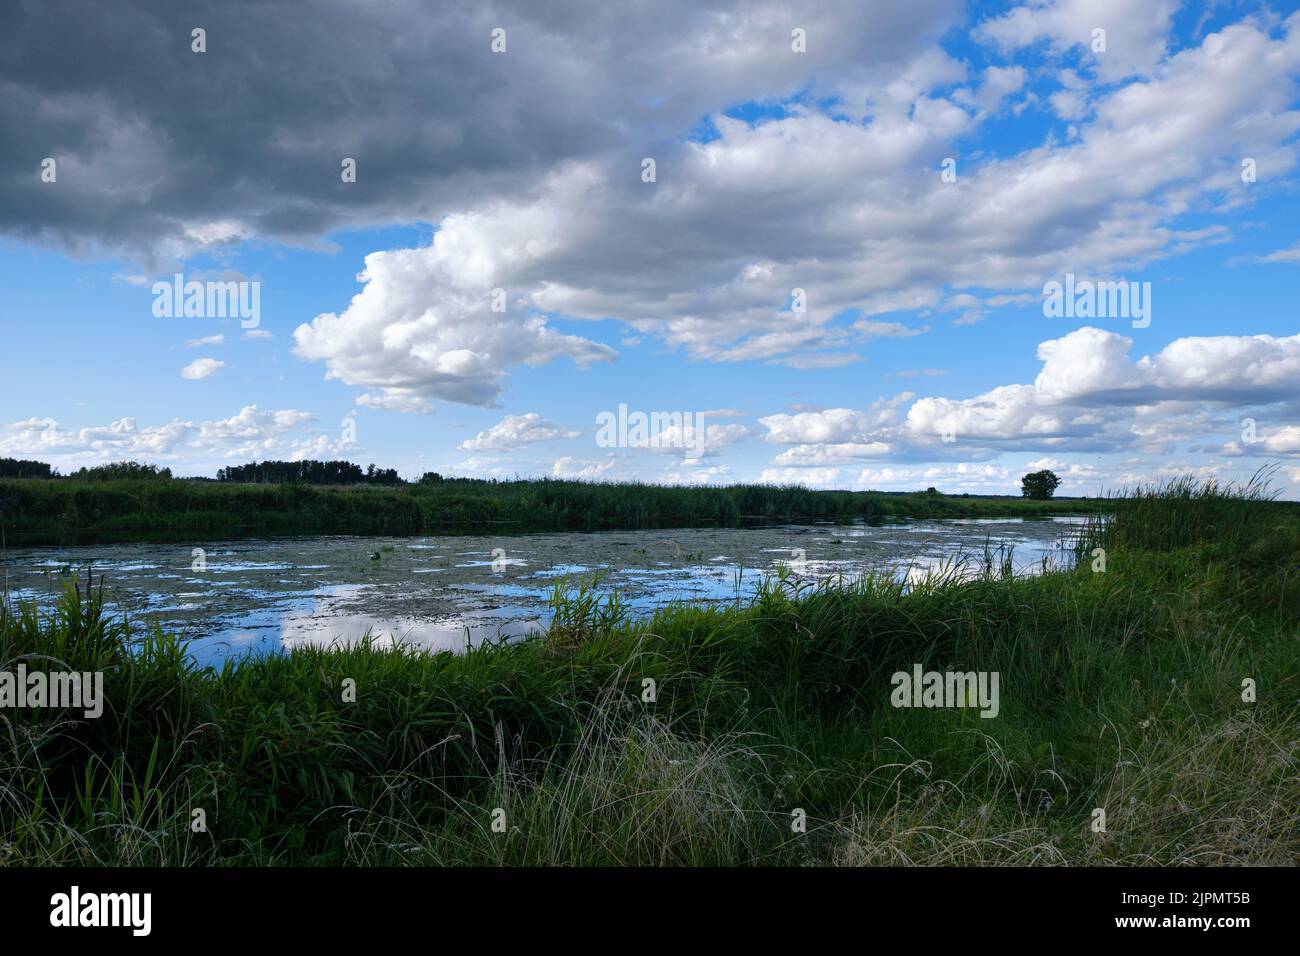 Le soffici nuvole sul fiume Biebrza si riflettono nell'acqua. Moody nuvoloso con cielo coperto. Precipita nelle paludi e nella natura selvaggia. Conteggio Foto Stock